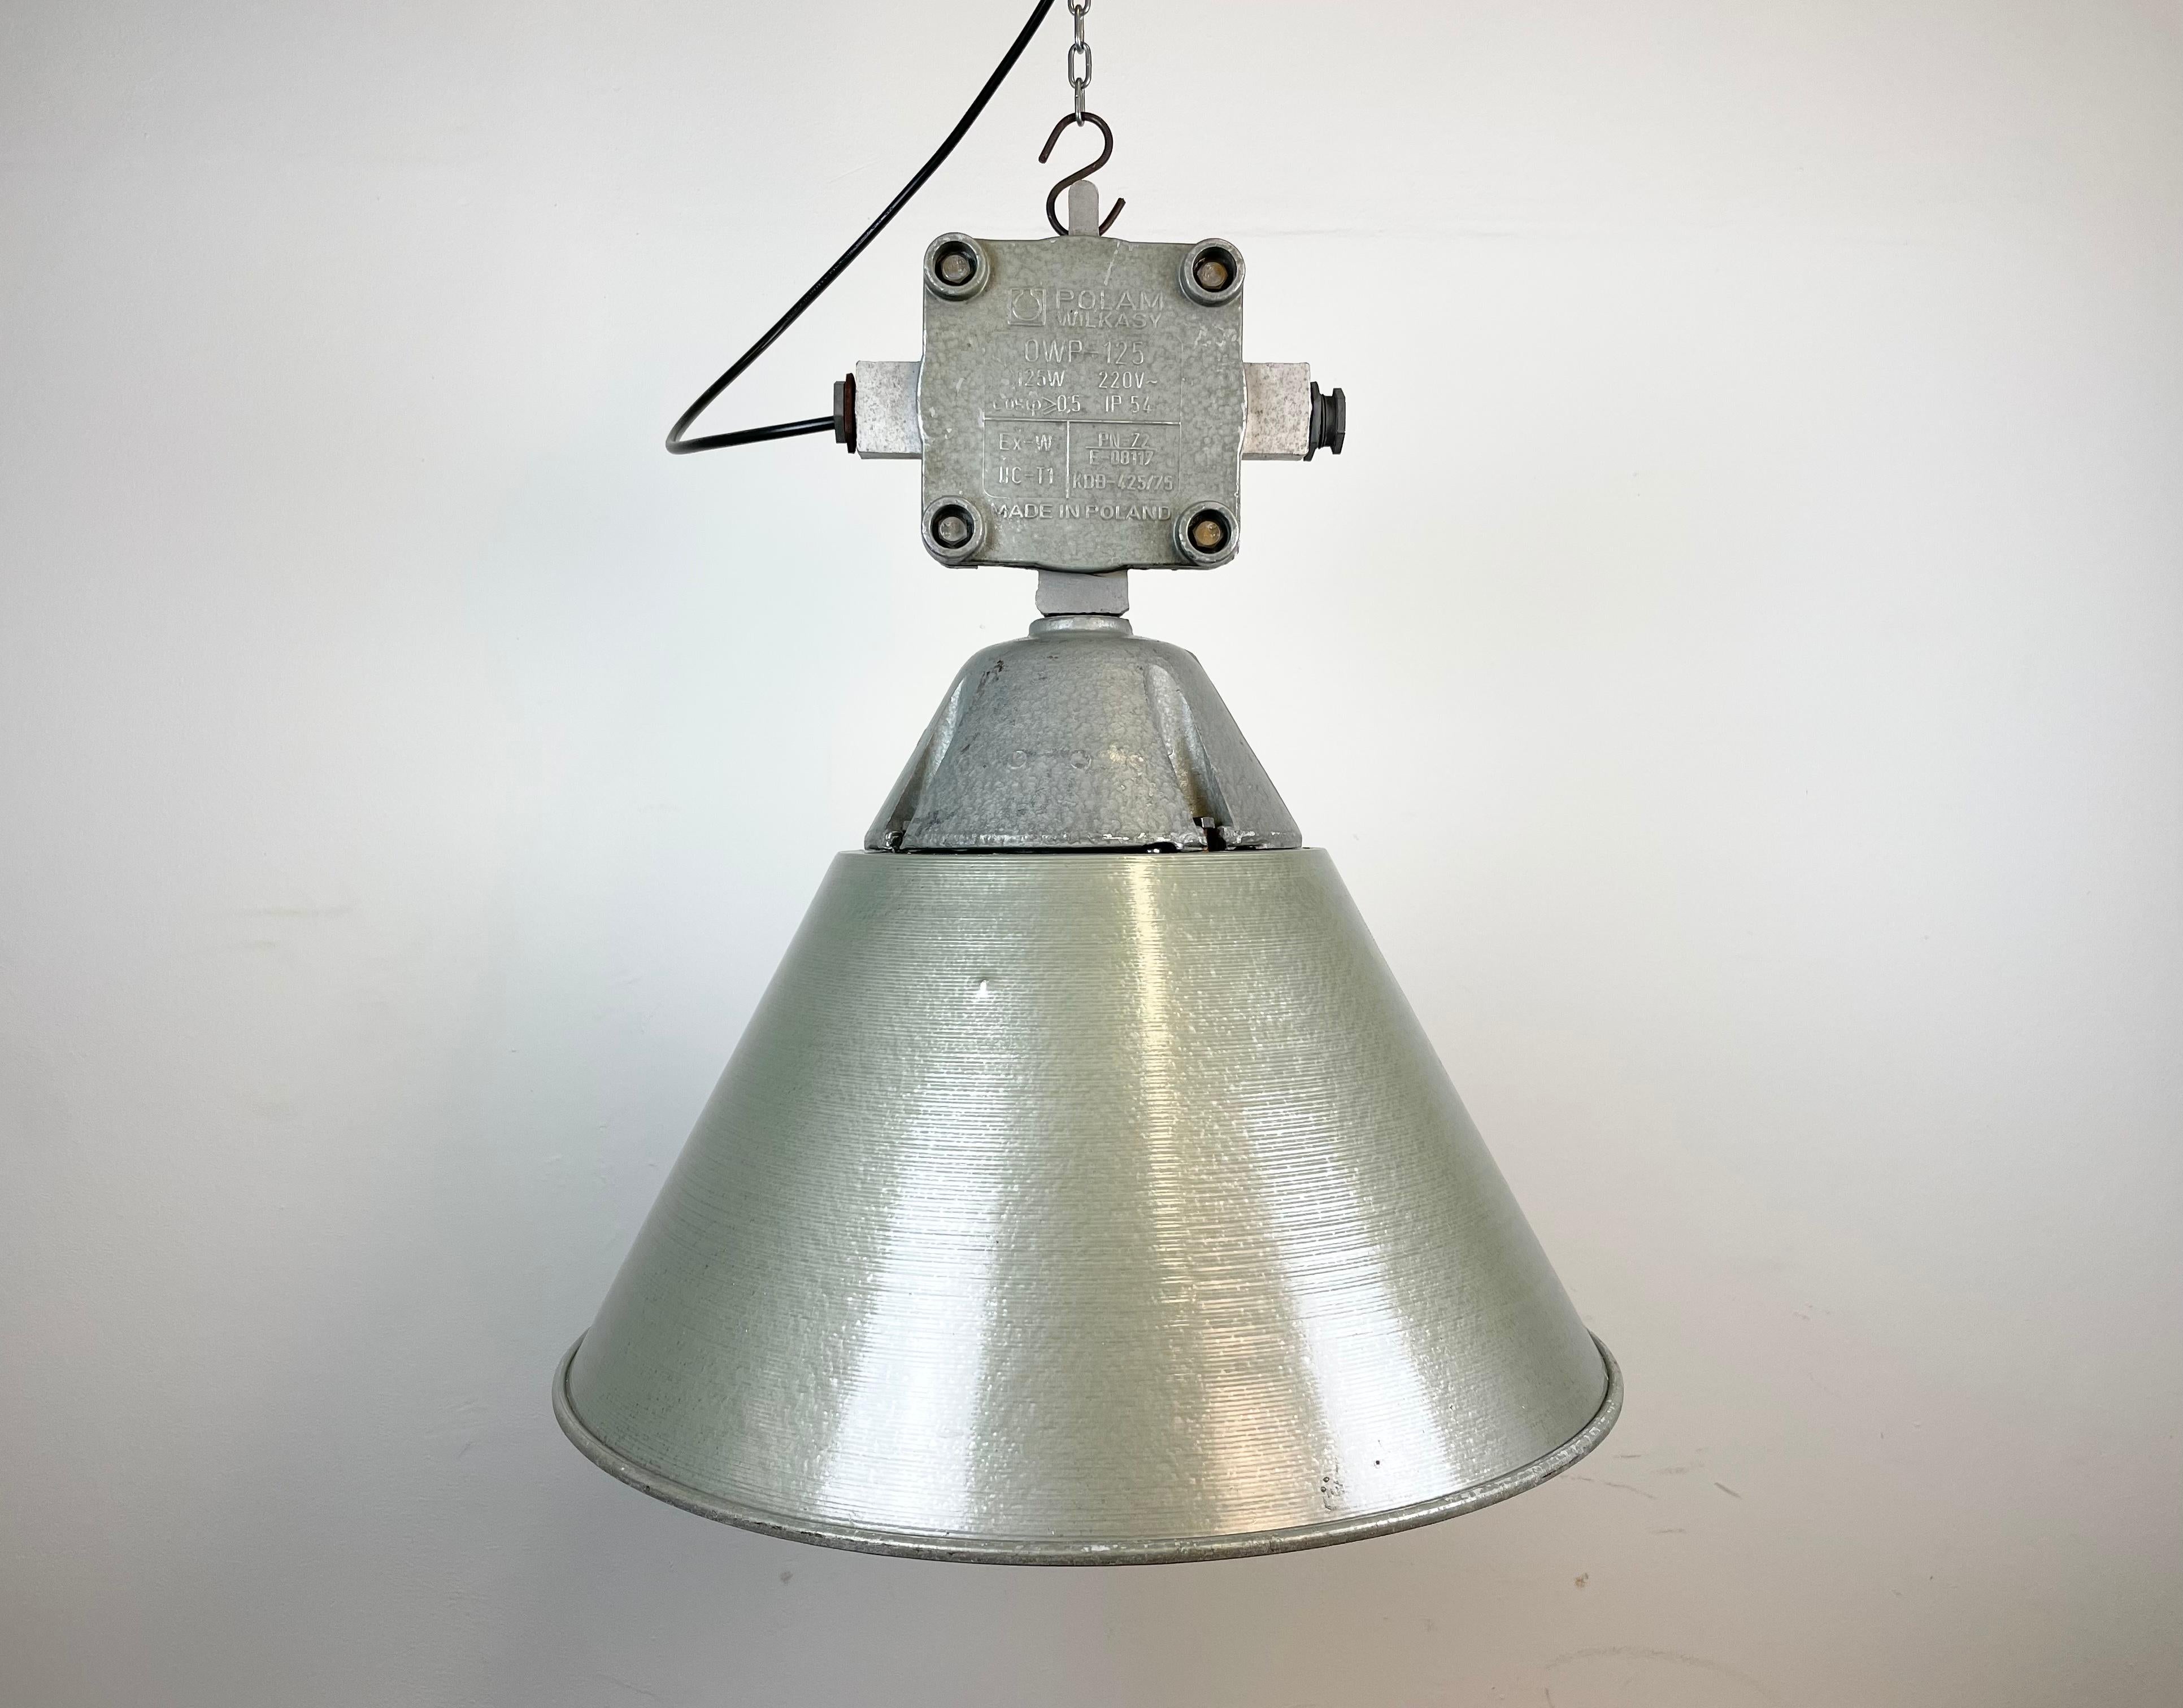 Lampe d'usine industrielle fabriquée par Polam Wilkasy en Pologne dans les années 1970. Il est composé d'un corps en fonte d'aluminium, d'une cage en fer et d'un abat-jour en verre mikl antidéflagrant et en aluminium.
La douille nécessite des